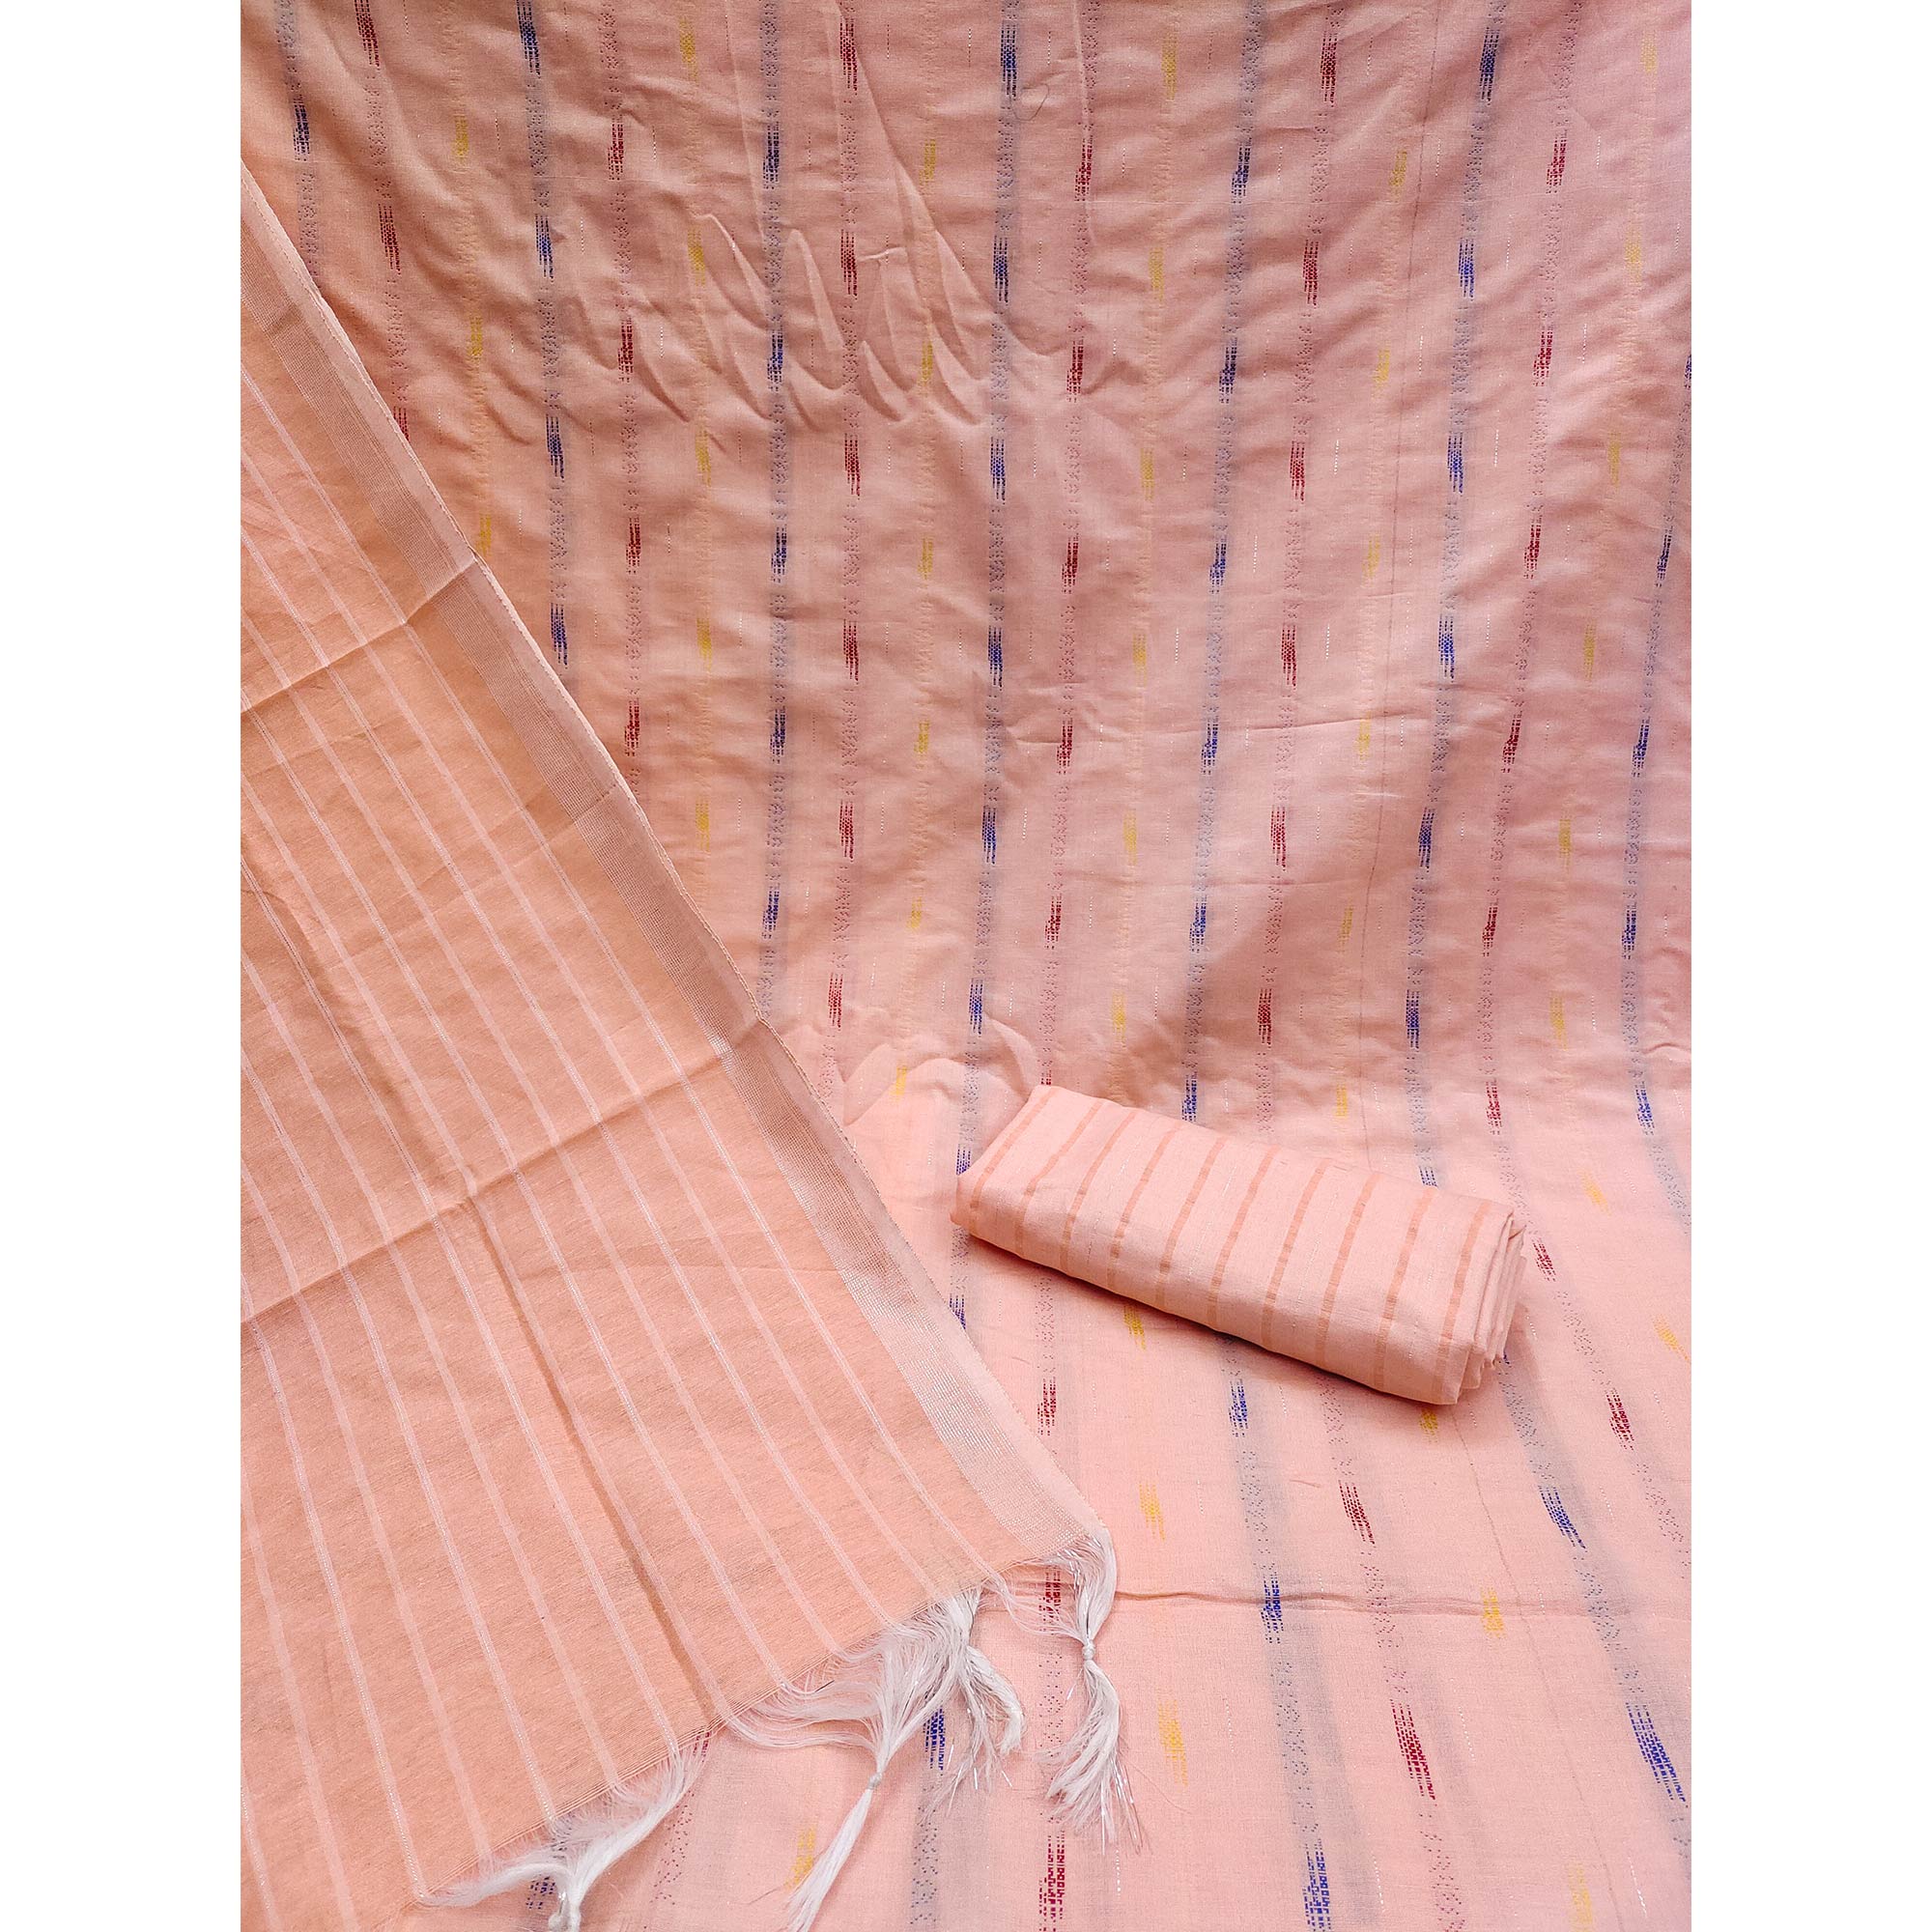 Peach Woven Cotton Blend Dress Material